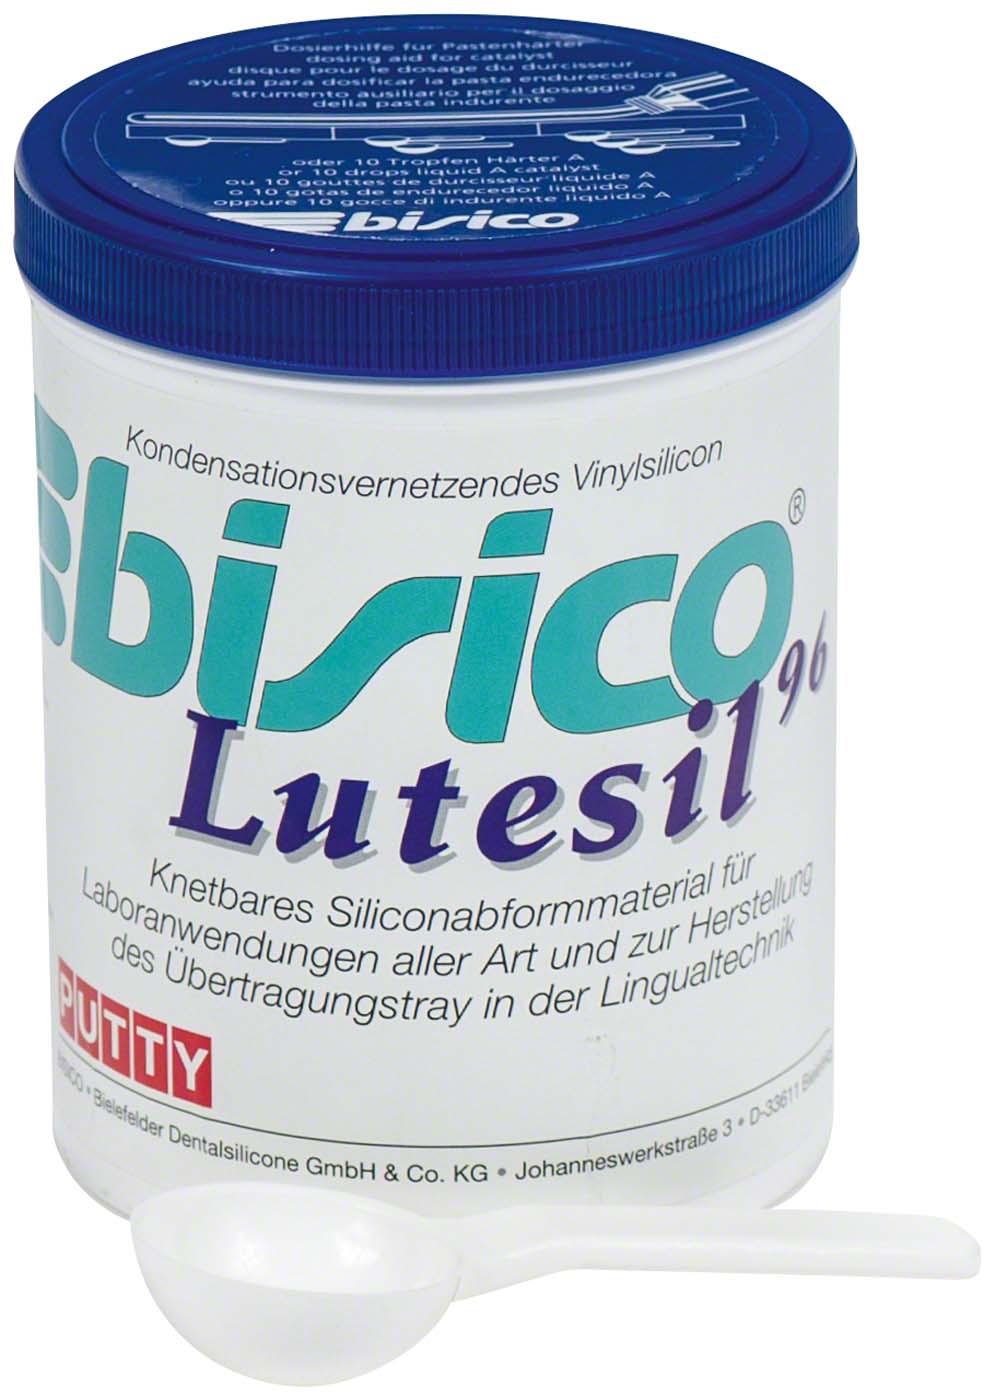 bisico® Lutesil 96 bisico